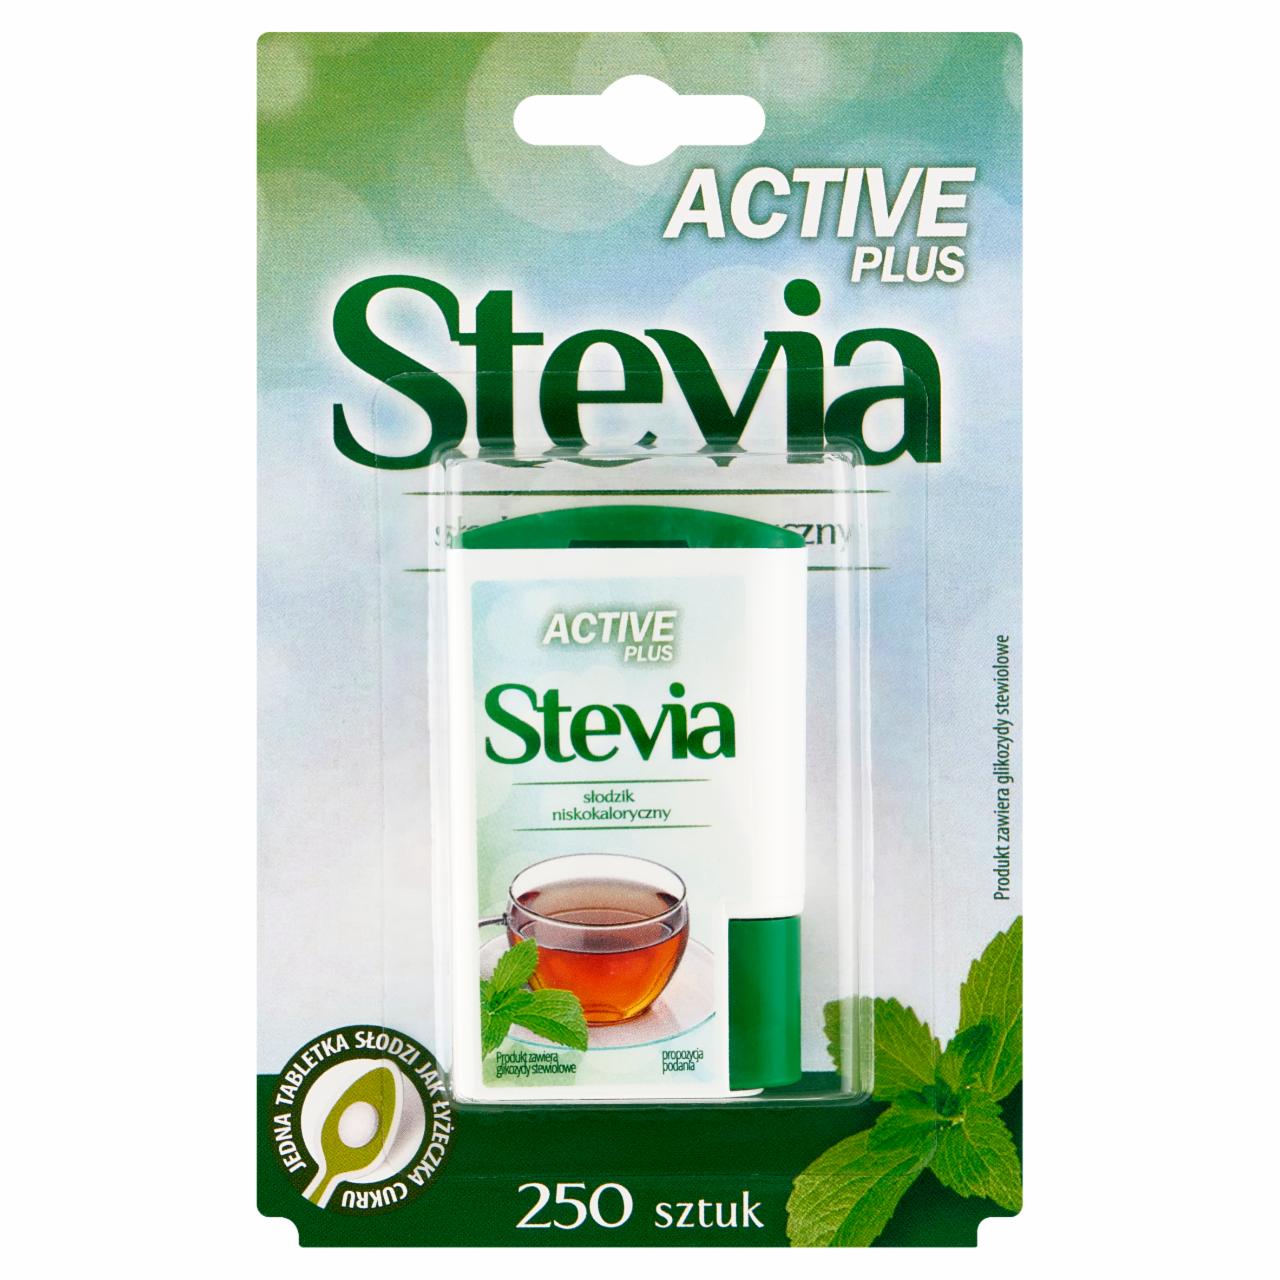 Zdjęcia - Active Plus Stevia Słodzik niskokaloryczny 13 g (250 sztuk)